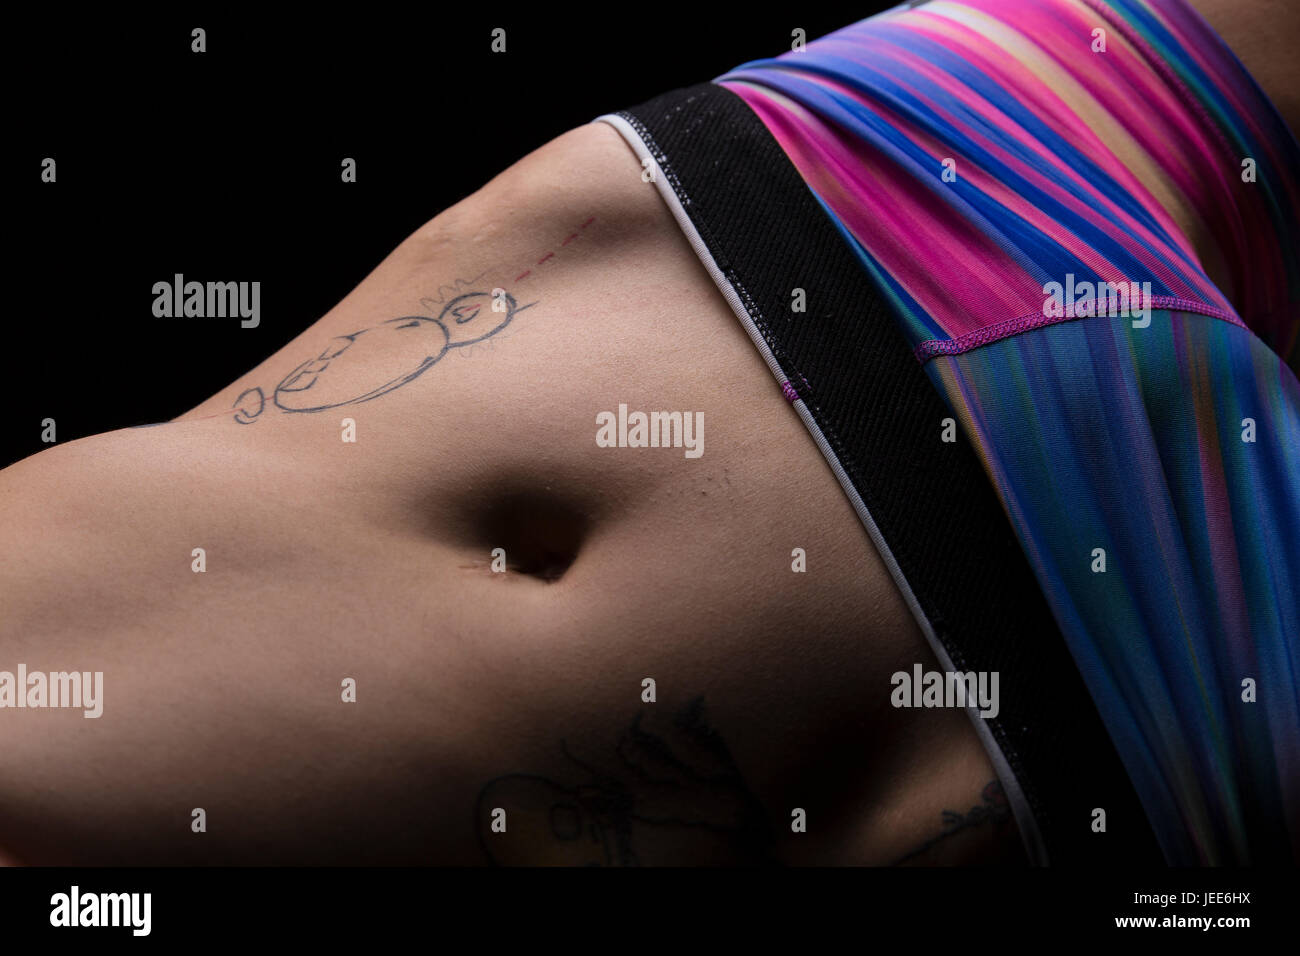 Nahaufnahme von Bauch und Hüften eine athletische junge Asiatin mit tattoos Stockfoto